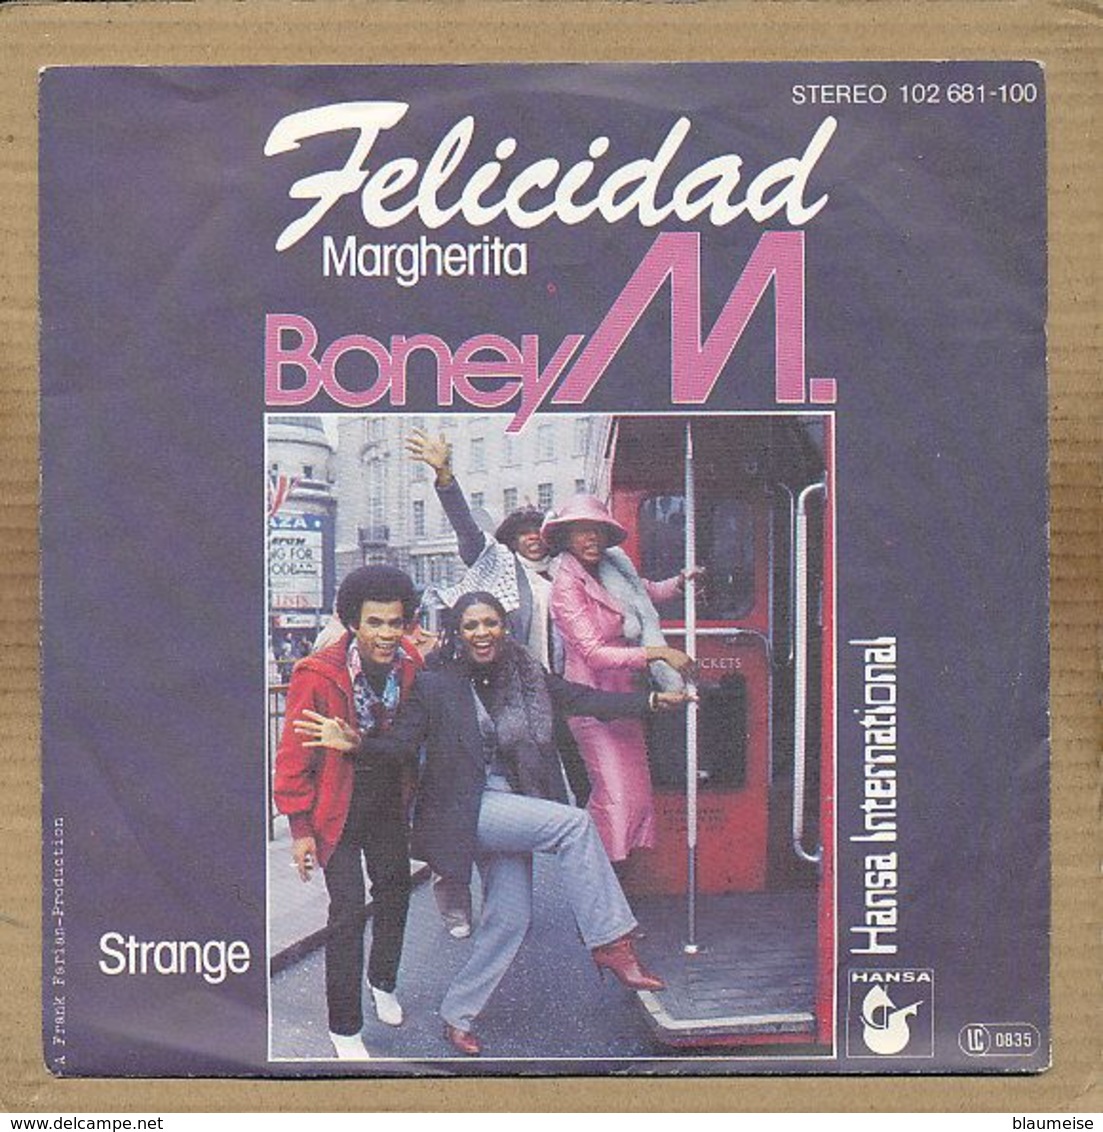 7" Single, Boney M. - Felicidad - Disco, Pop